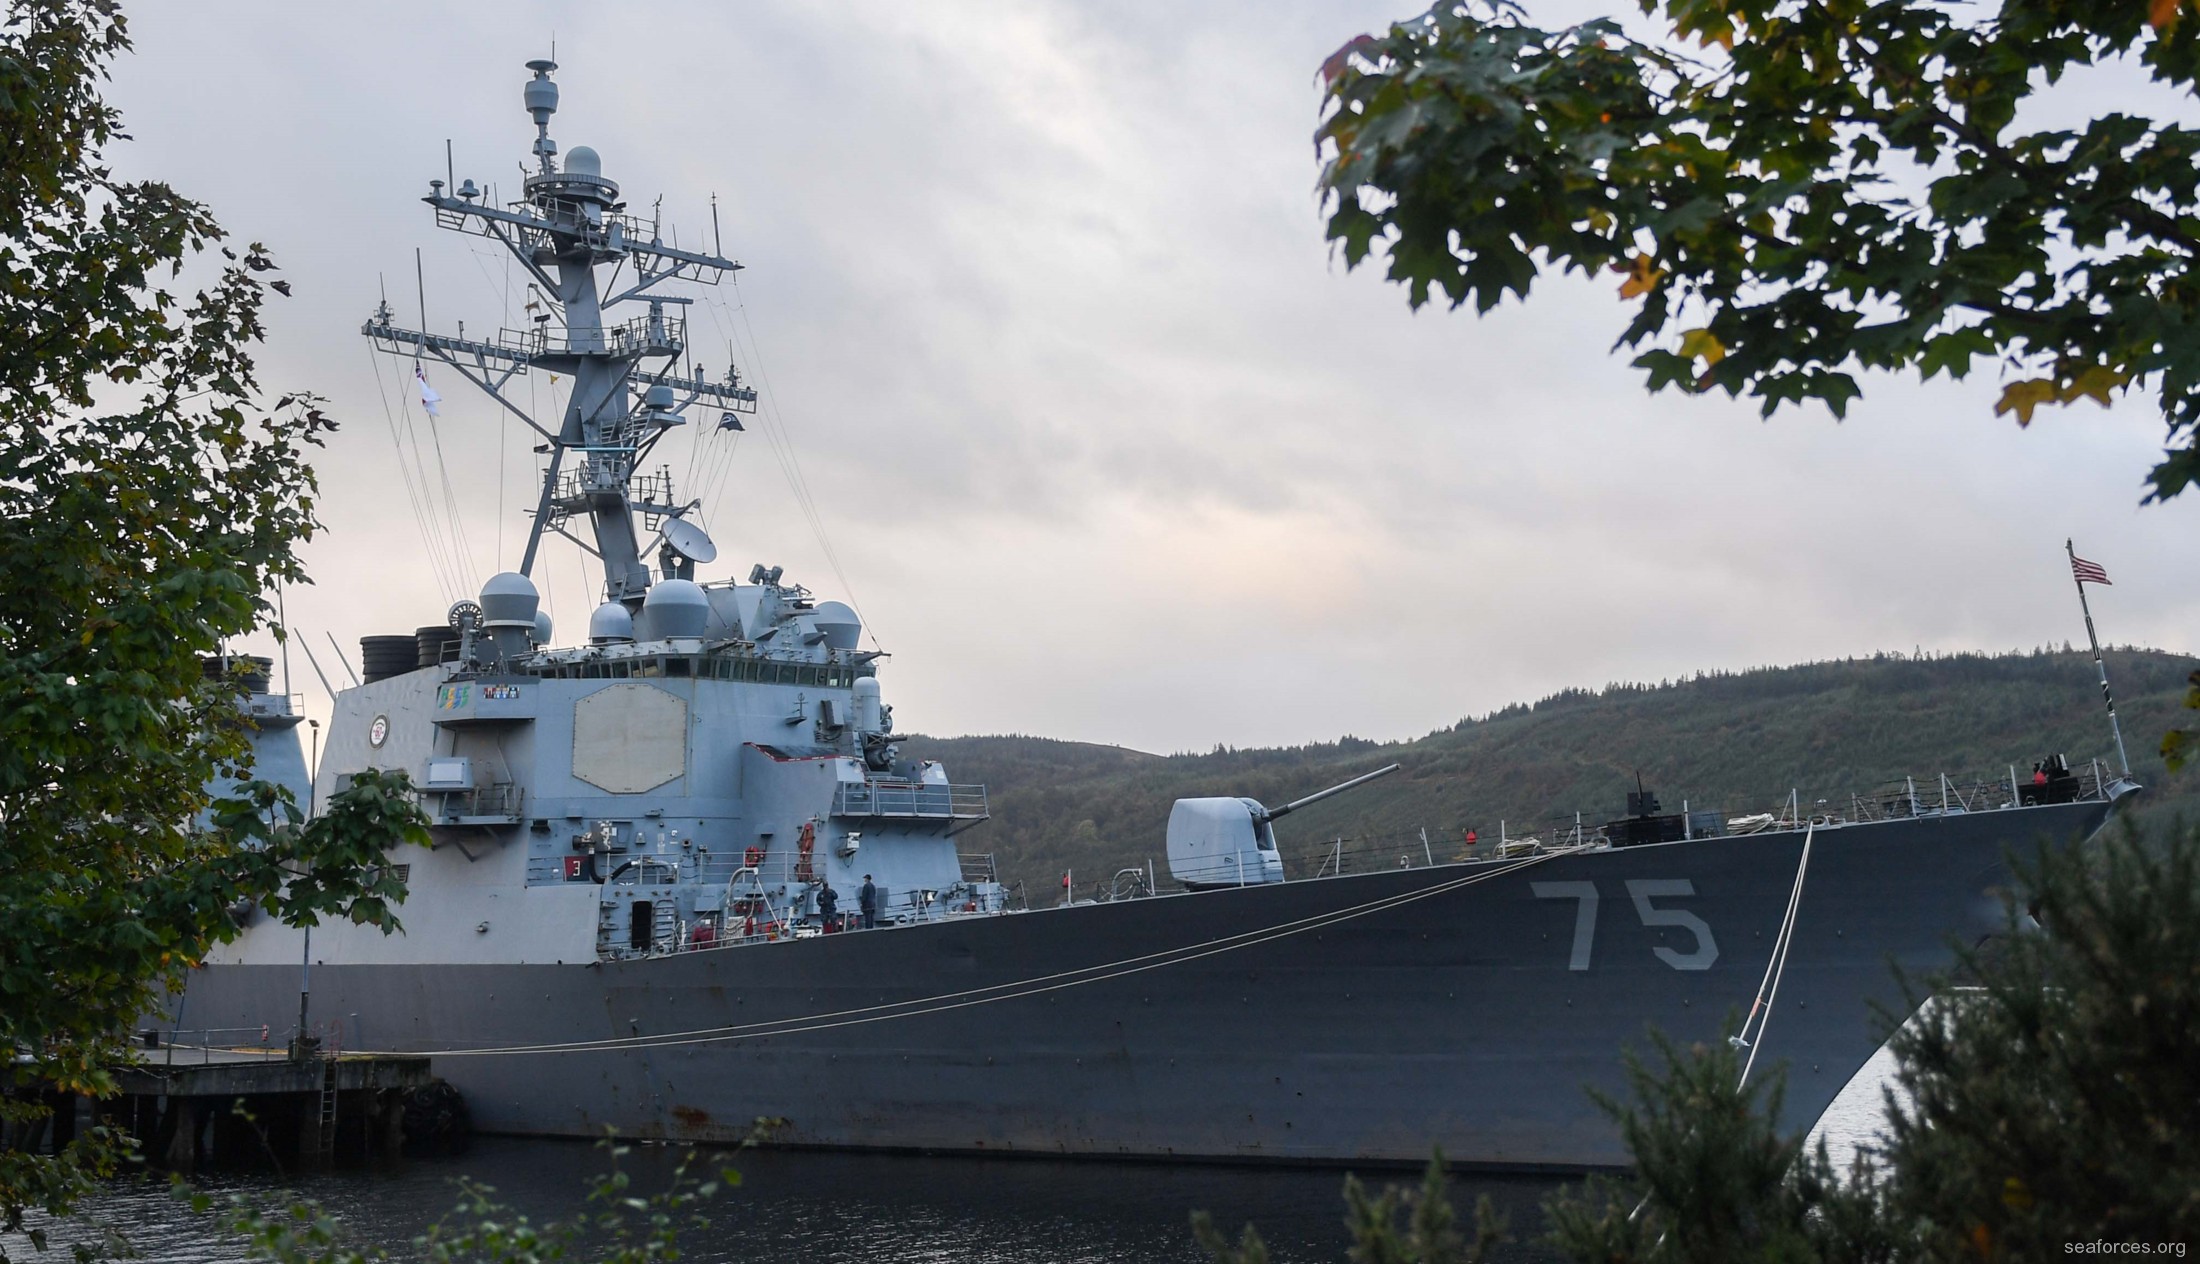 ddg-75 uss donald cook destroyer us navy 30 faslane